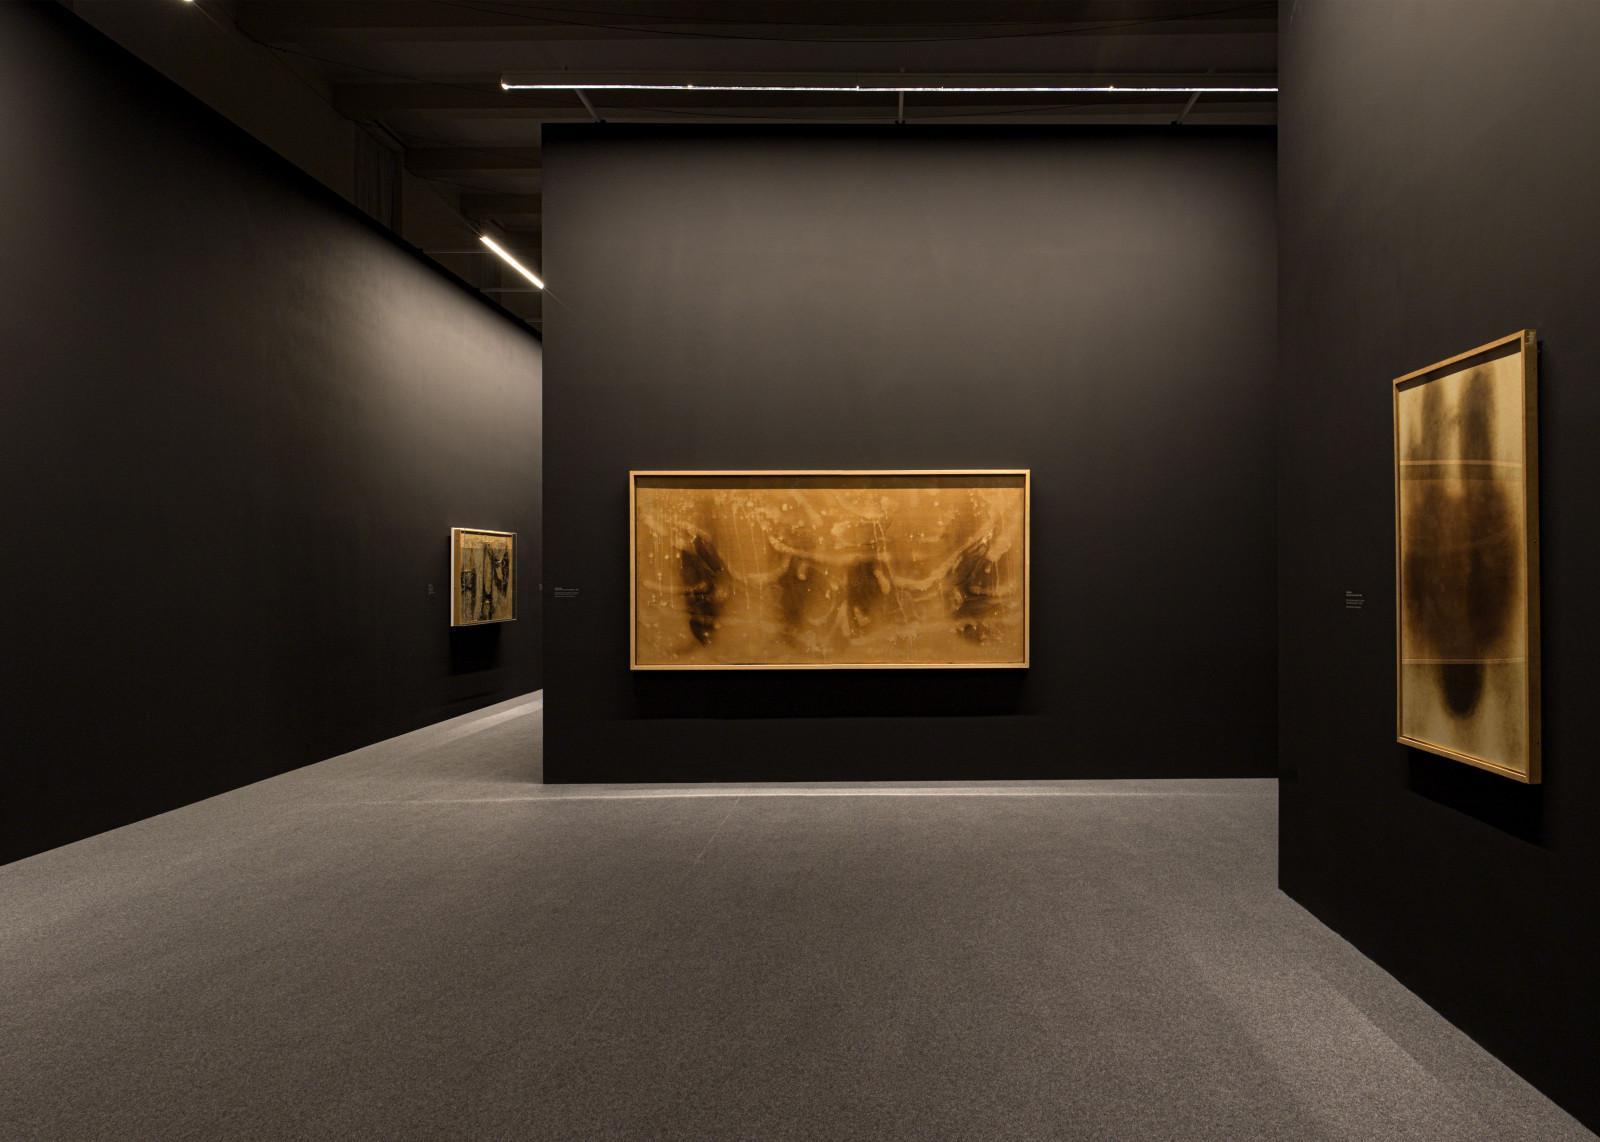 View of the exhibition "On Fire", Fondazione Giorgio Cini, Venice, 2022